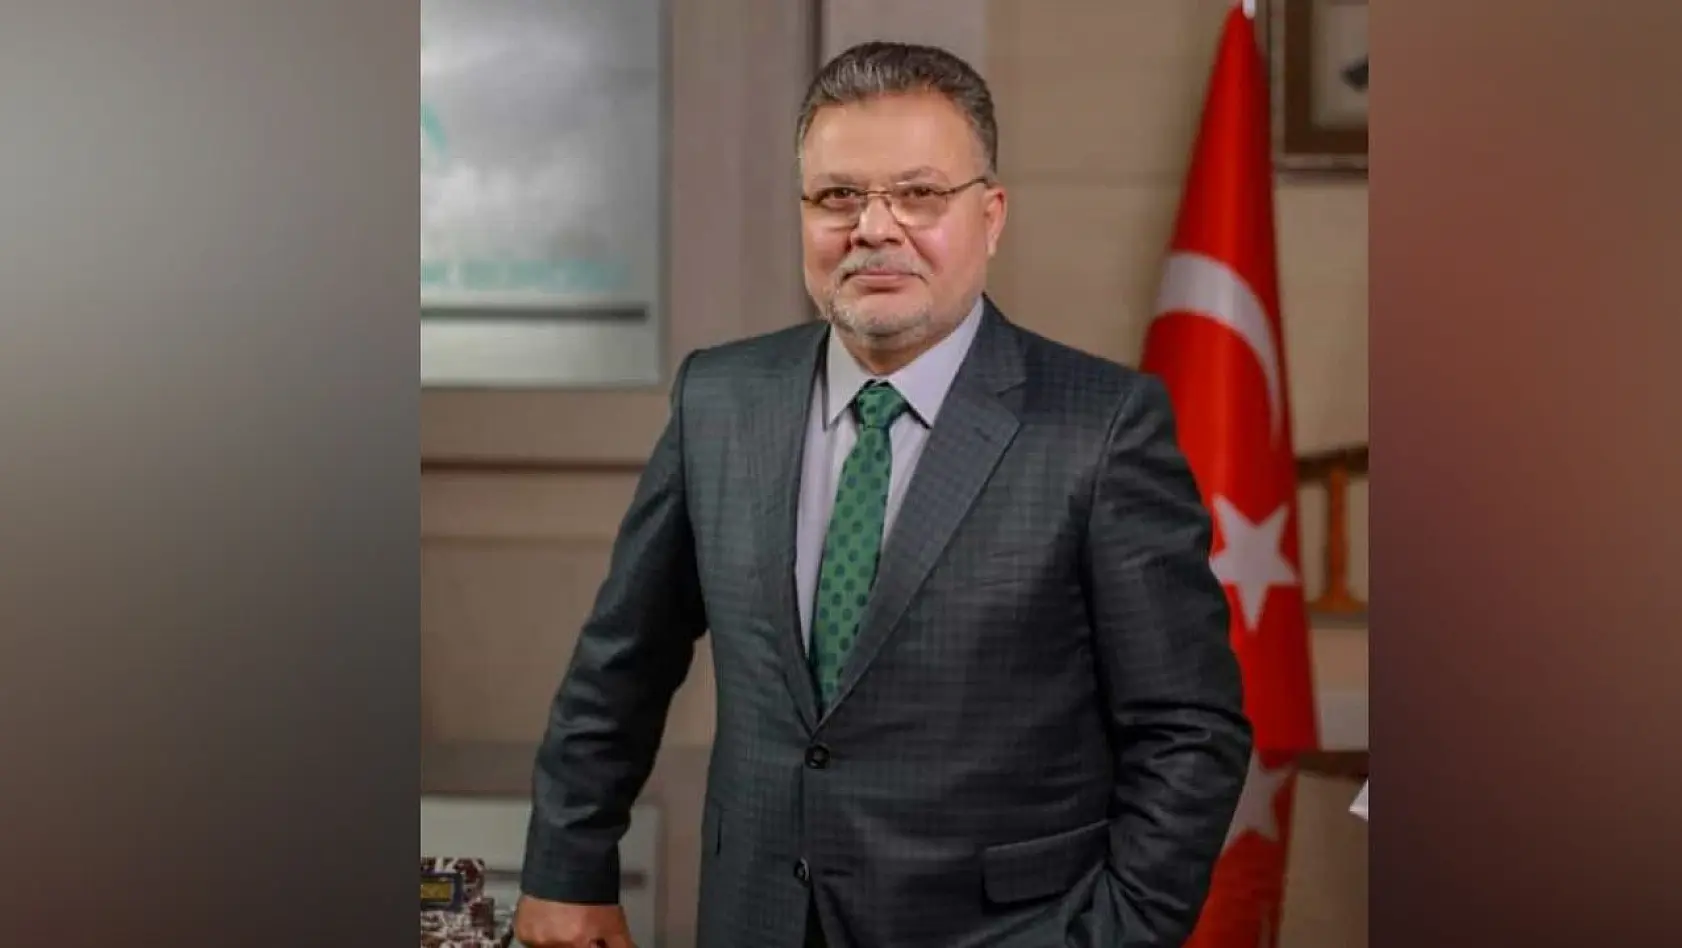 Yeniden Refah Partisi MKYK Üyesi Av. İbrahim Gök'ten 28 Şubat Açıklaması